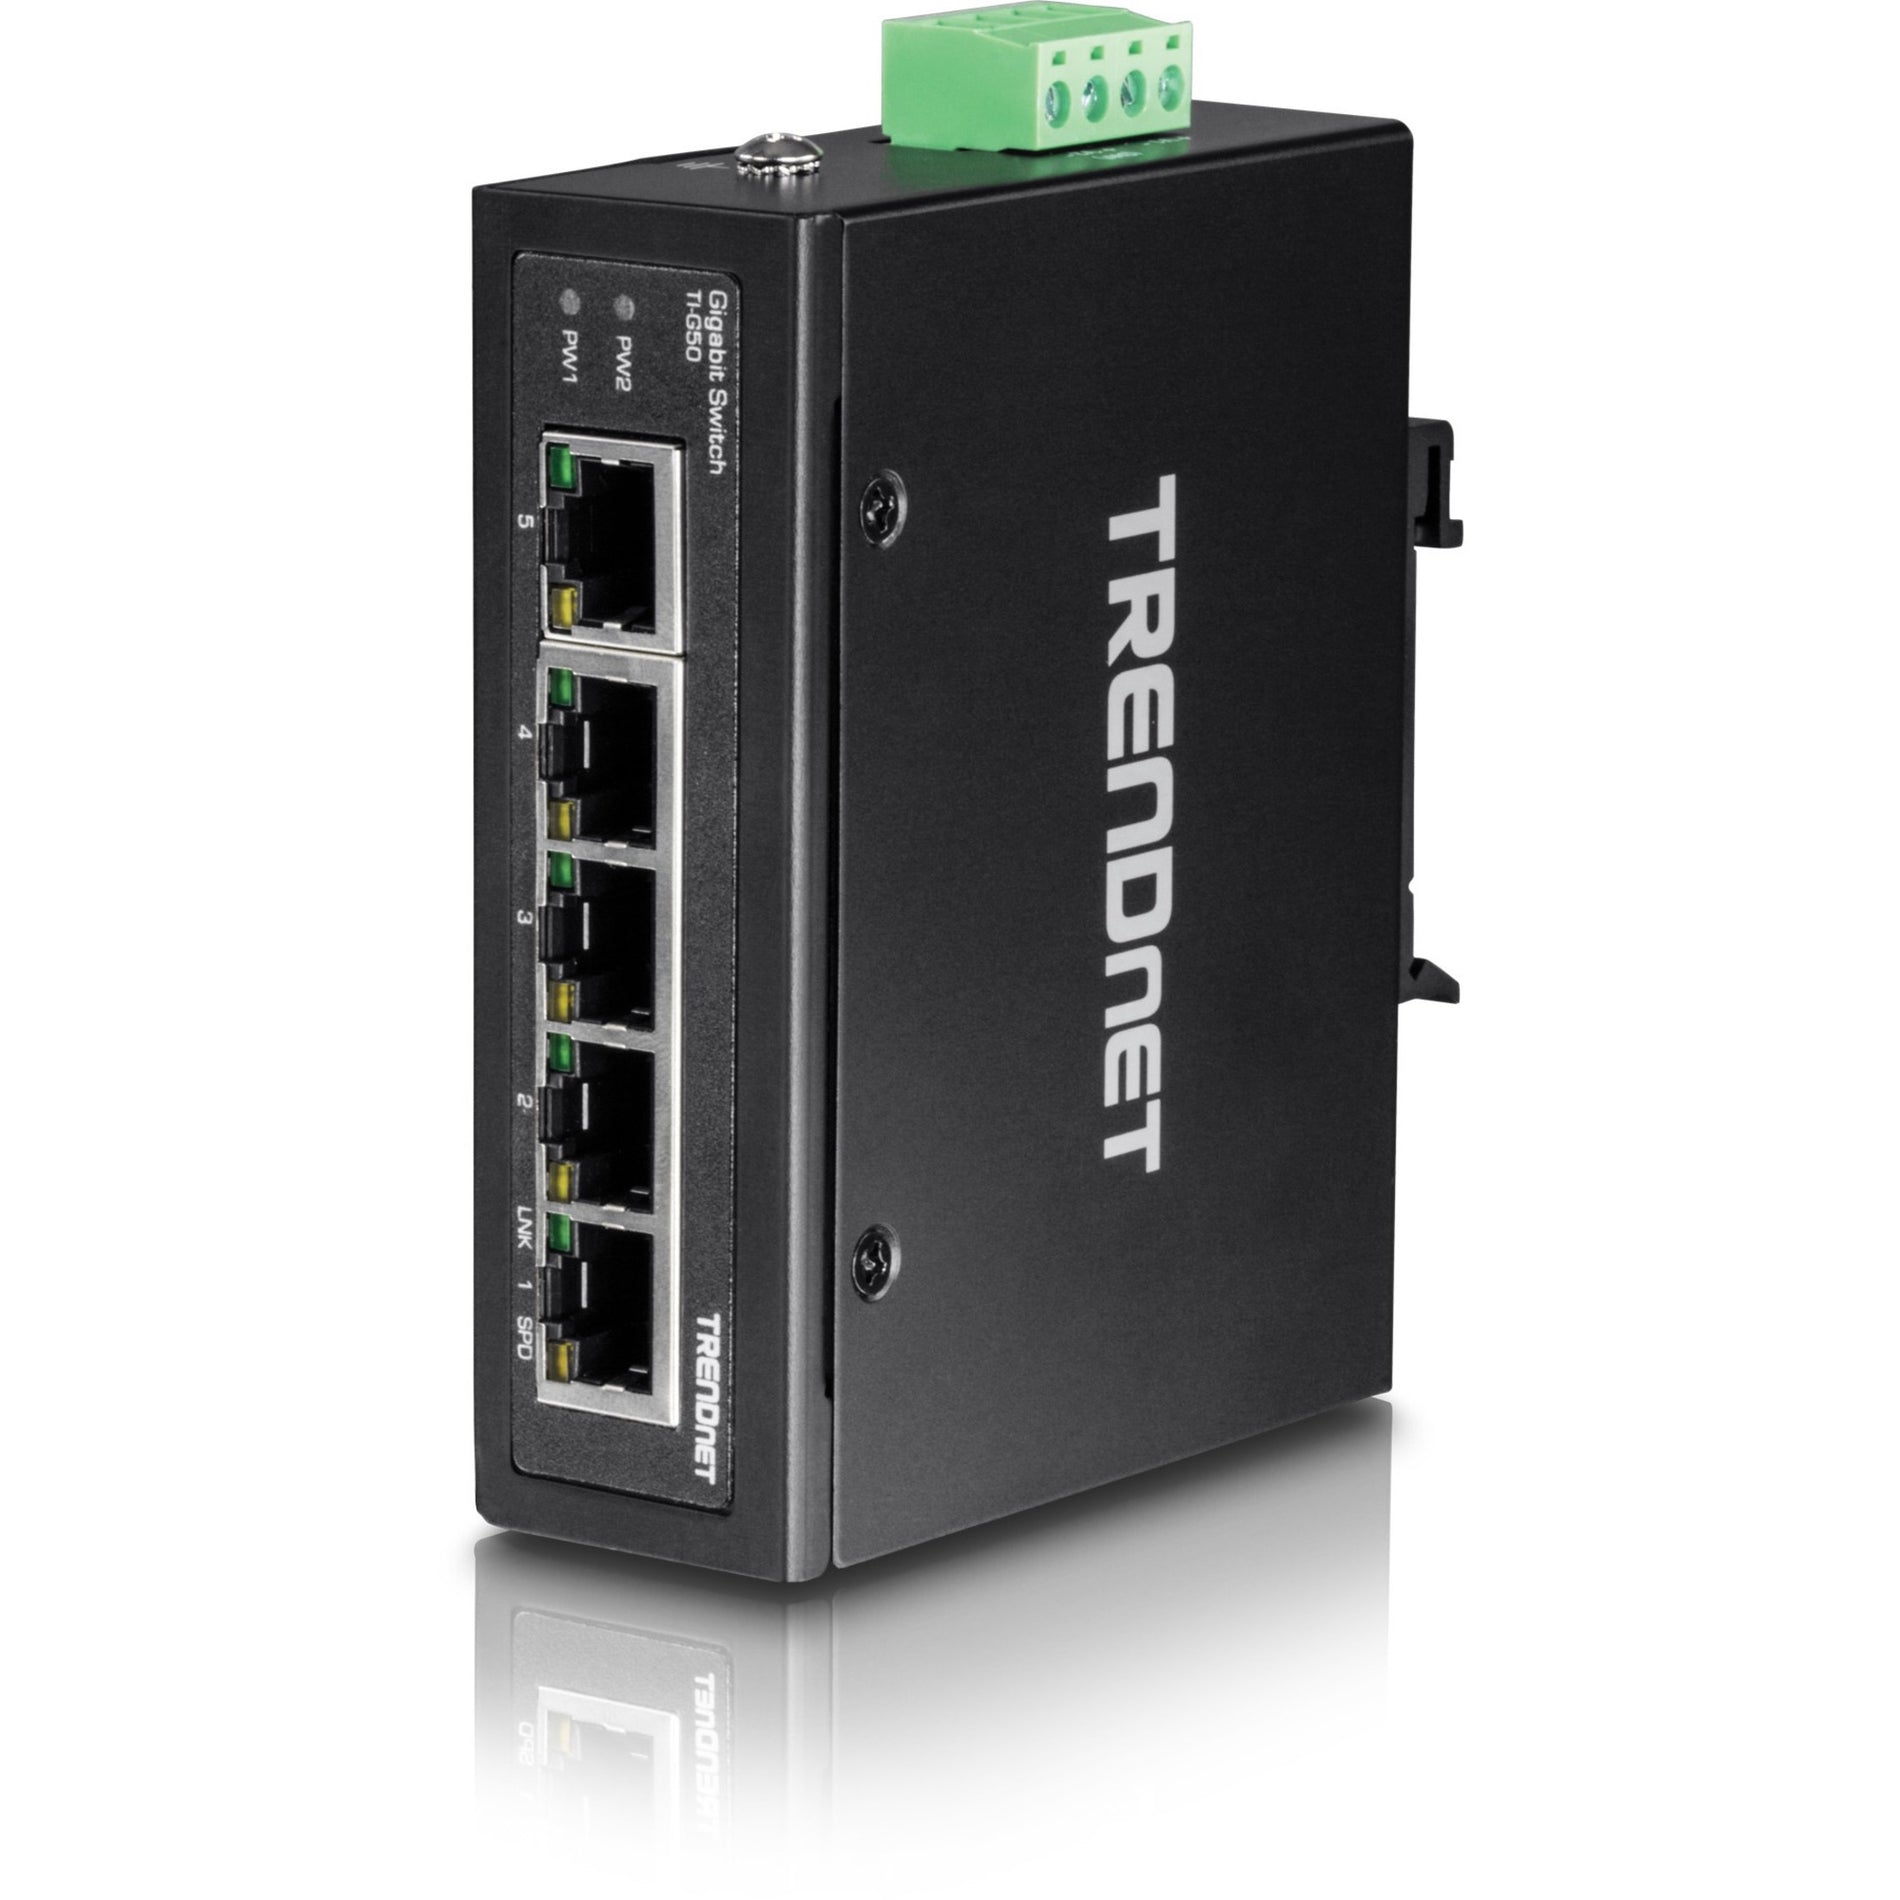 TRENDnet TI-G50 5端口硬化工业千兆交换机，10 Gbps交换容量，IP30级网络交换机（-40至167°F），配有DIN导轨和壁挂支架，终身保护，黑色 TRENDnet 特连达